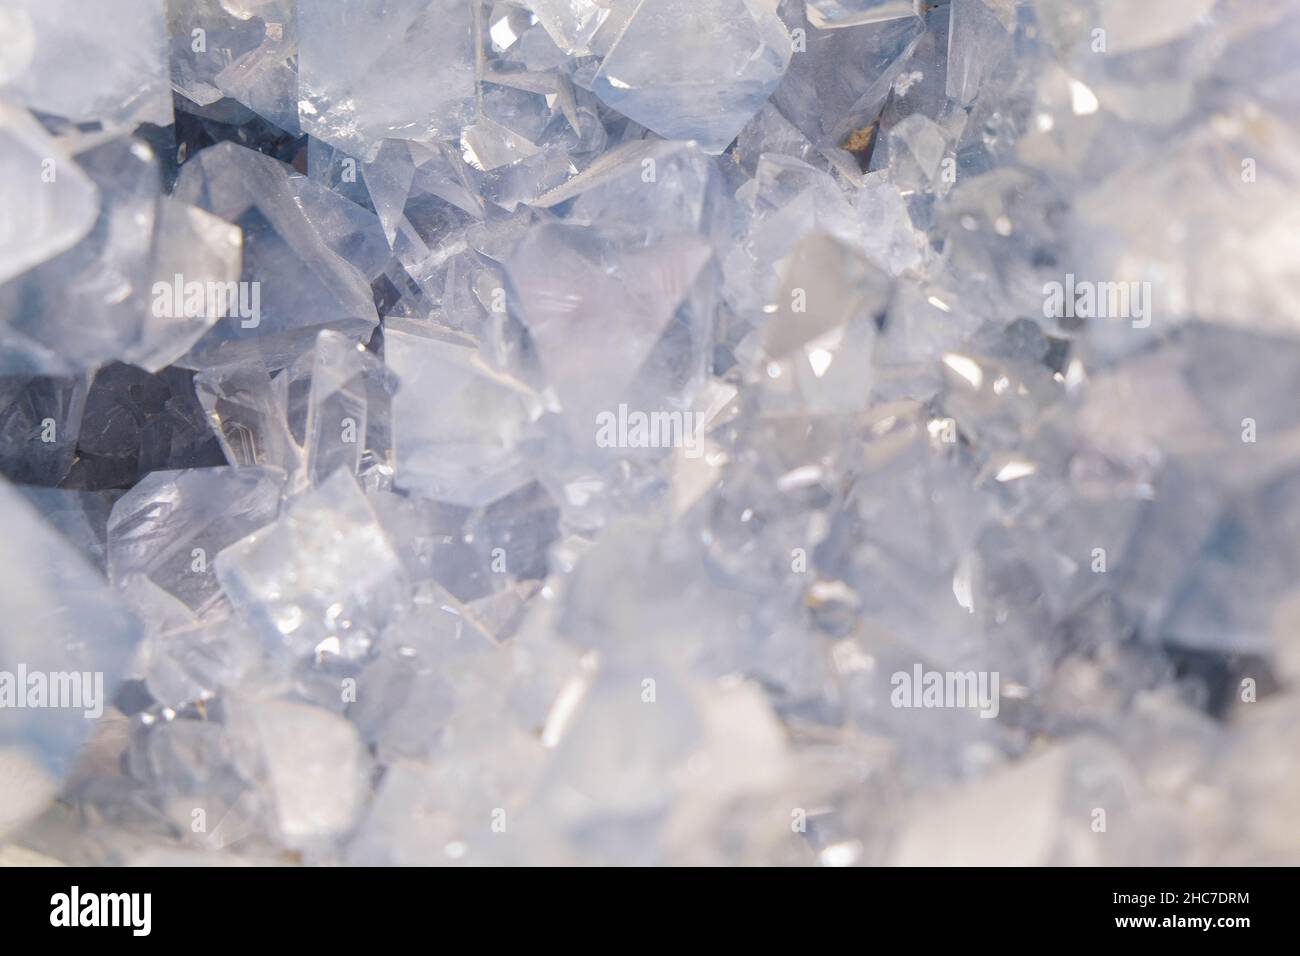 Gros plan de magnifiques cristaux transparents, fond horizontal Banque D'Images